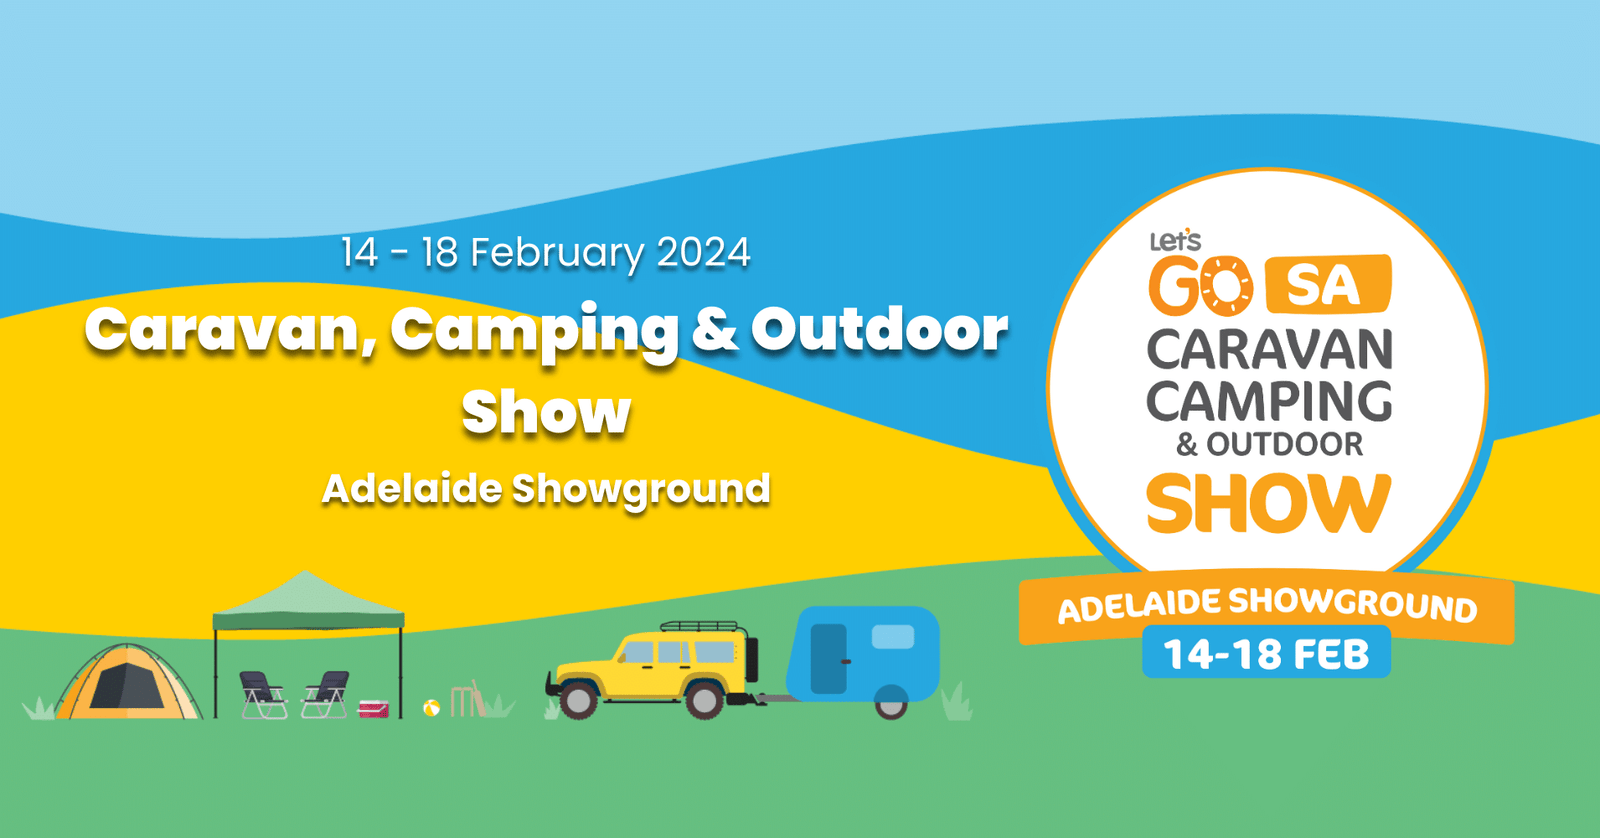 Let's Go SA: Caravan, Camping & Outdoor Show 2024